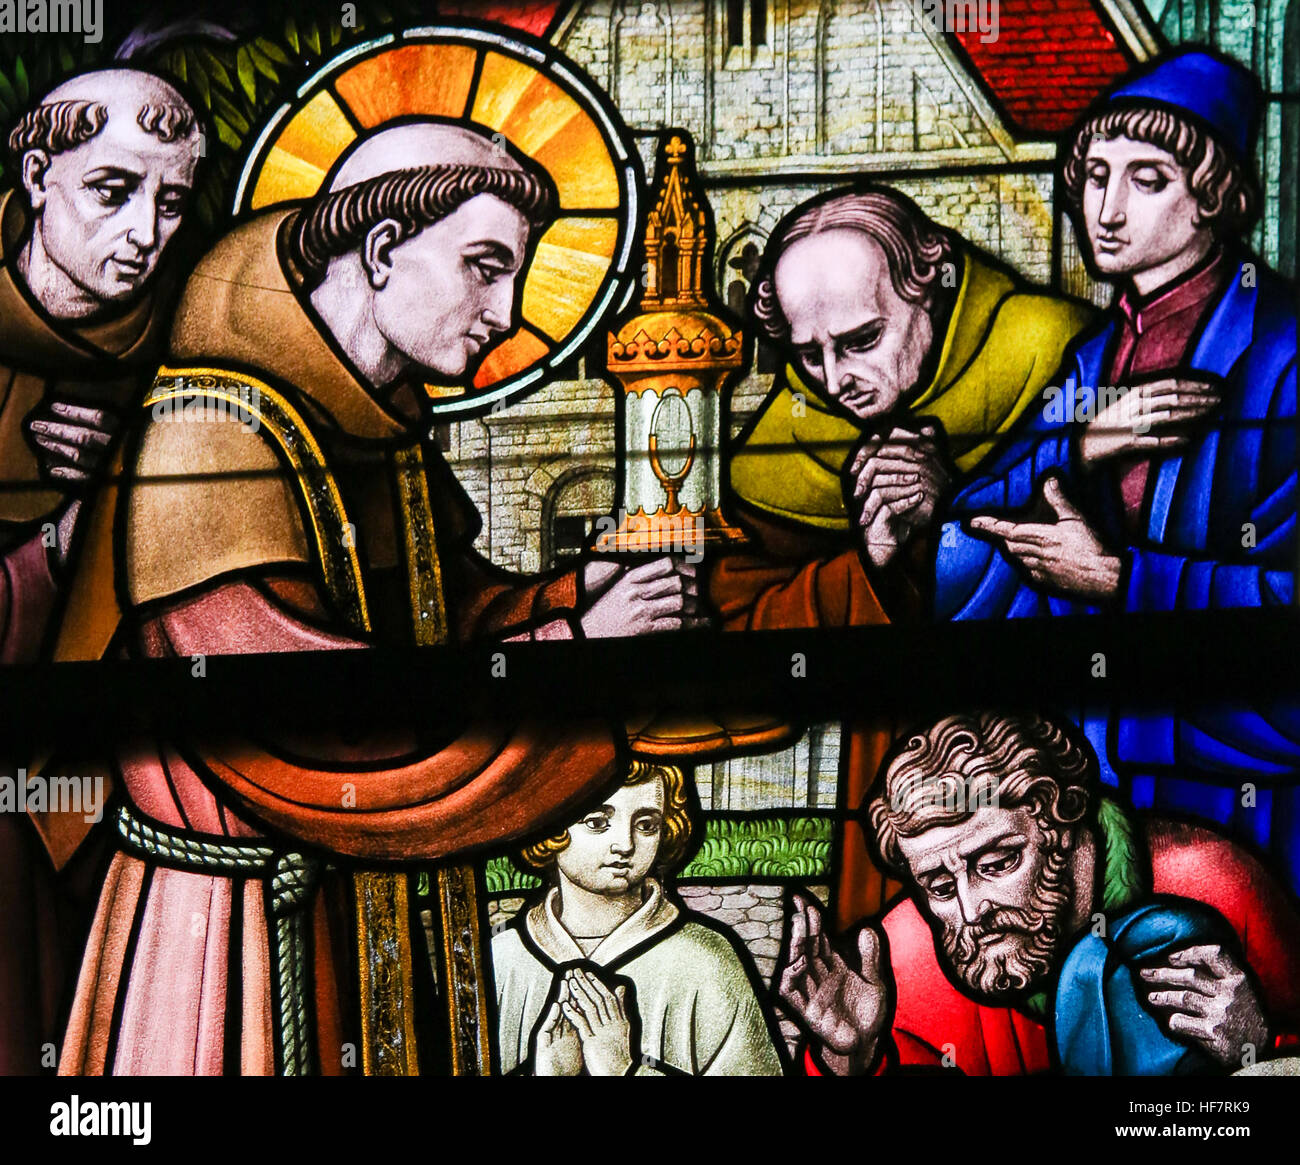 Glasmalerei-Fenster Darstellung des Heiligen Antonius von Padua in der Kathedrale St. Bavo in Gent, Flandern, Belgien. Stockfoto